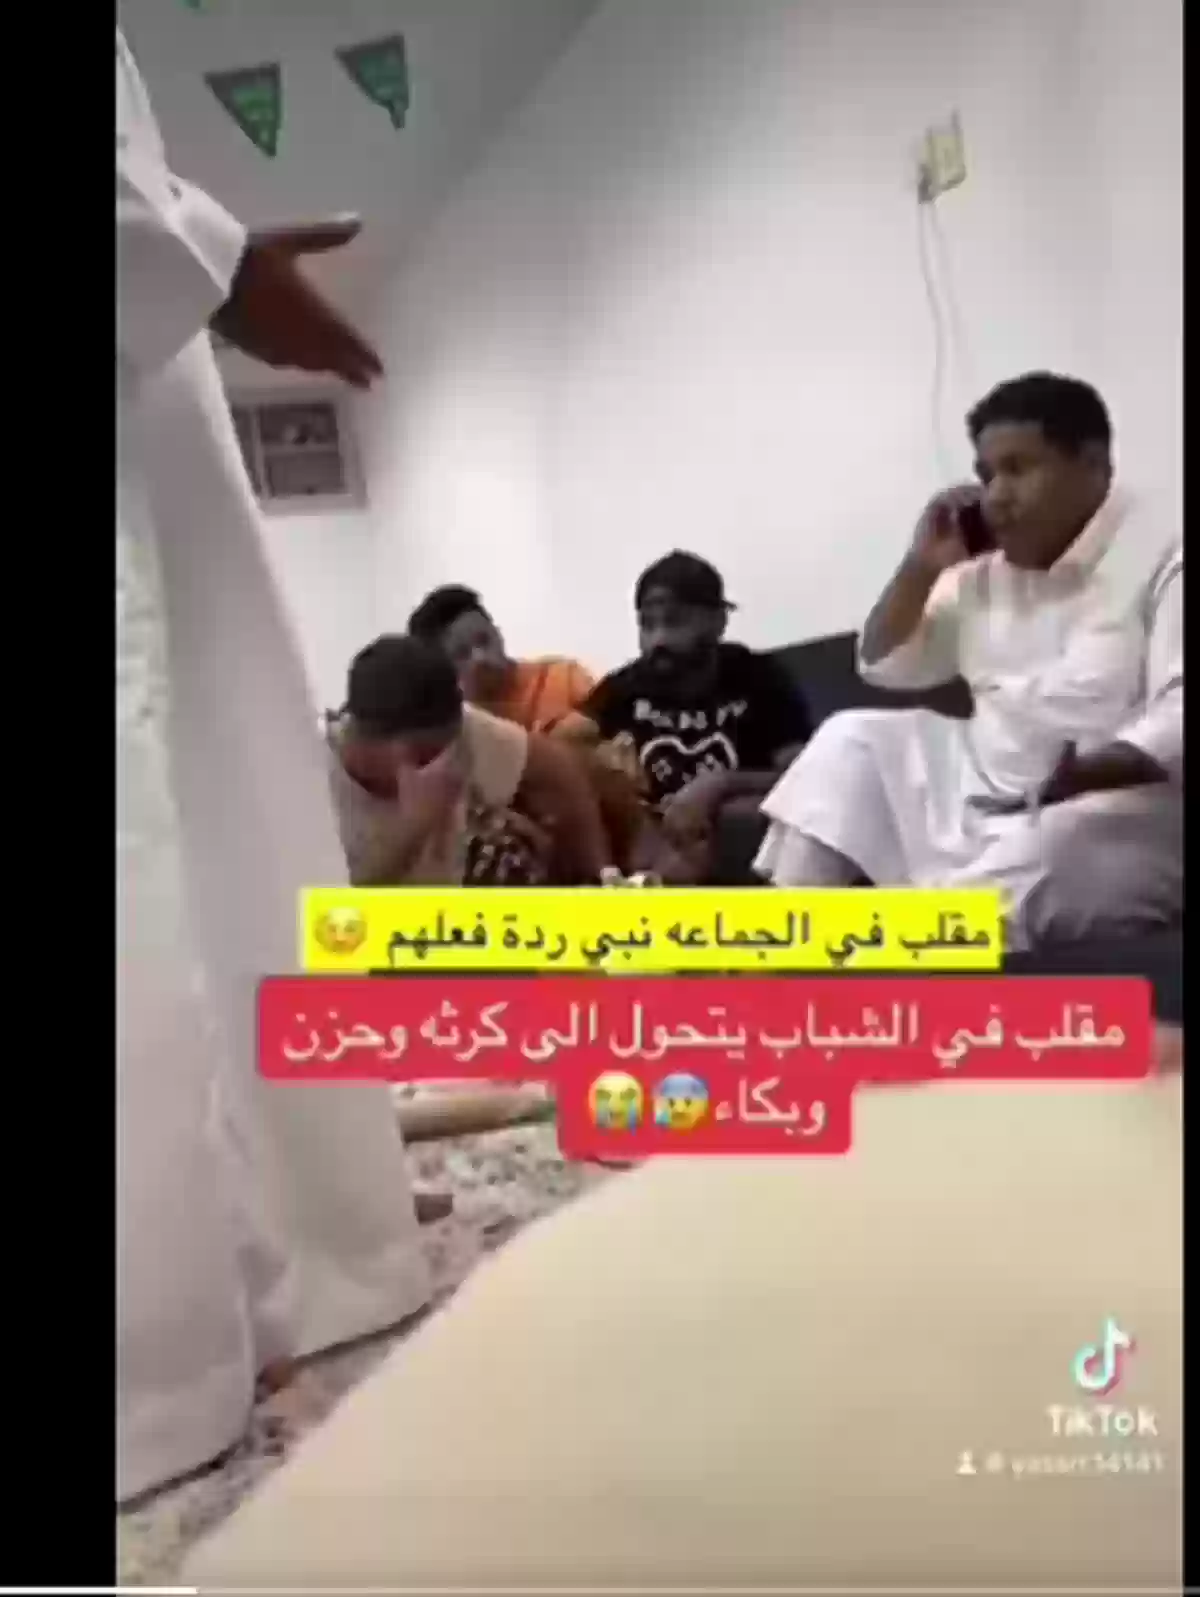 سعوديون يضربون صديقهم بعد صراخه على والدته في الهاتف